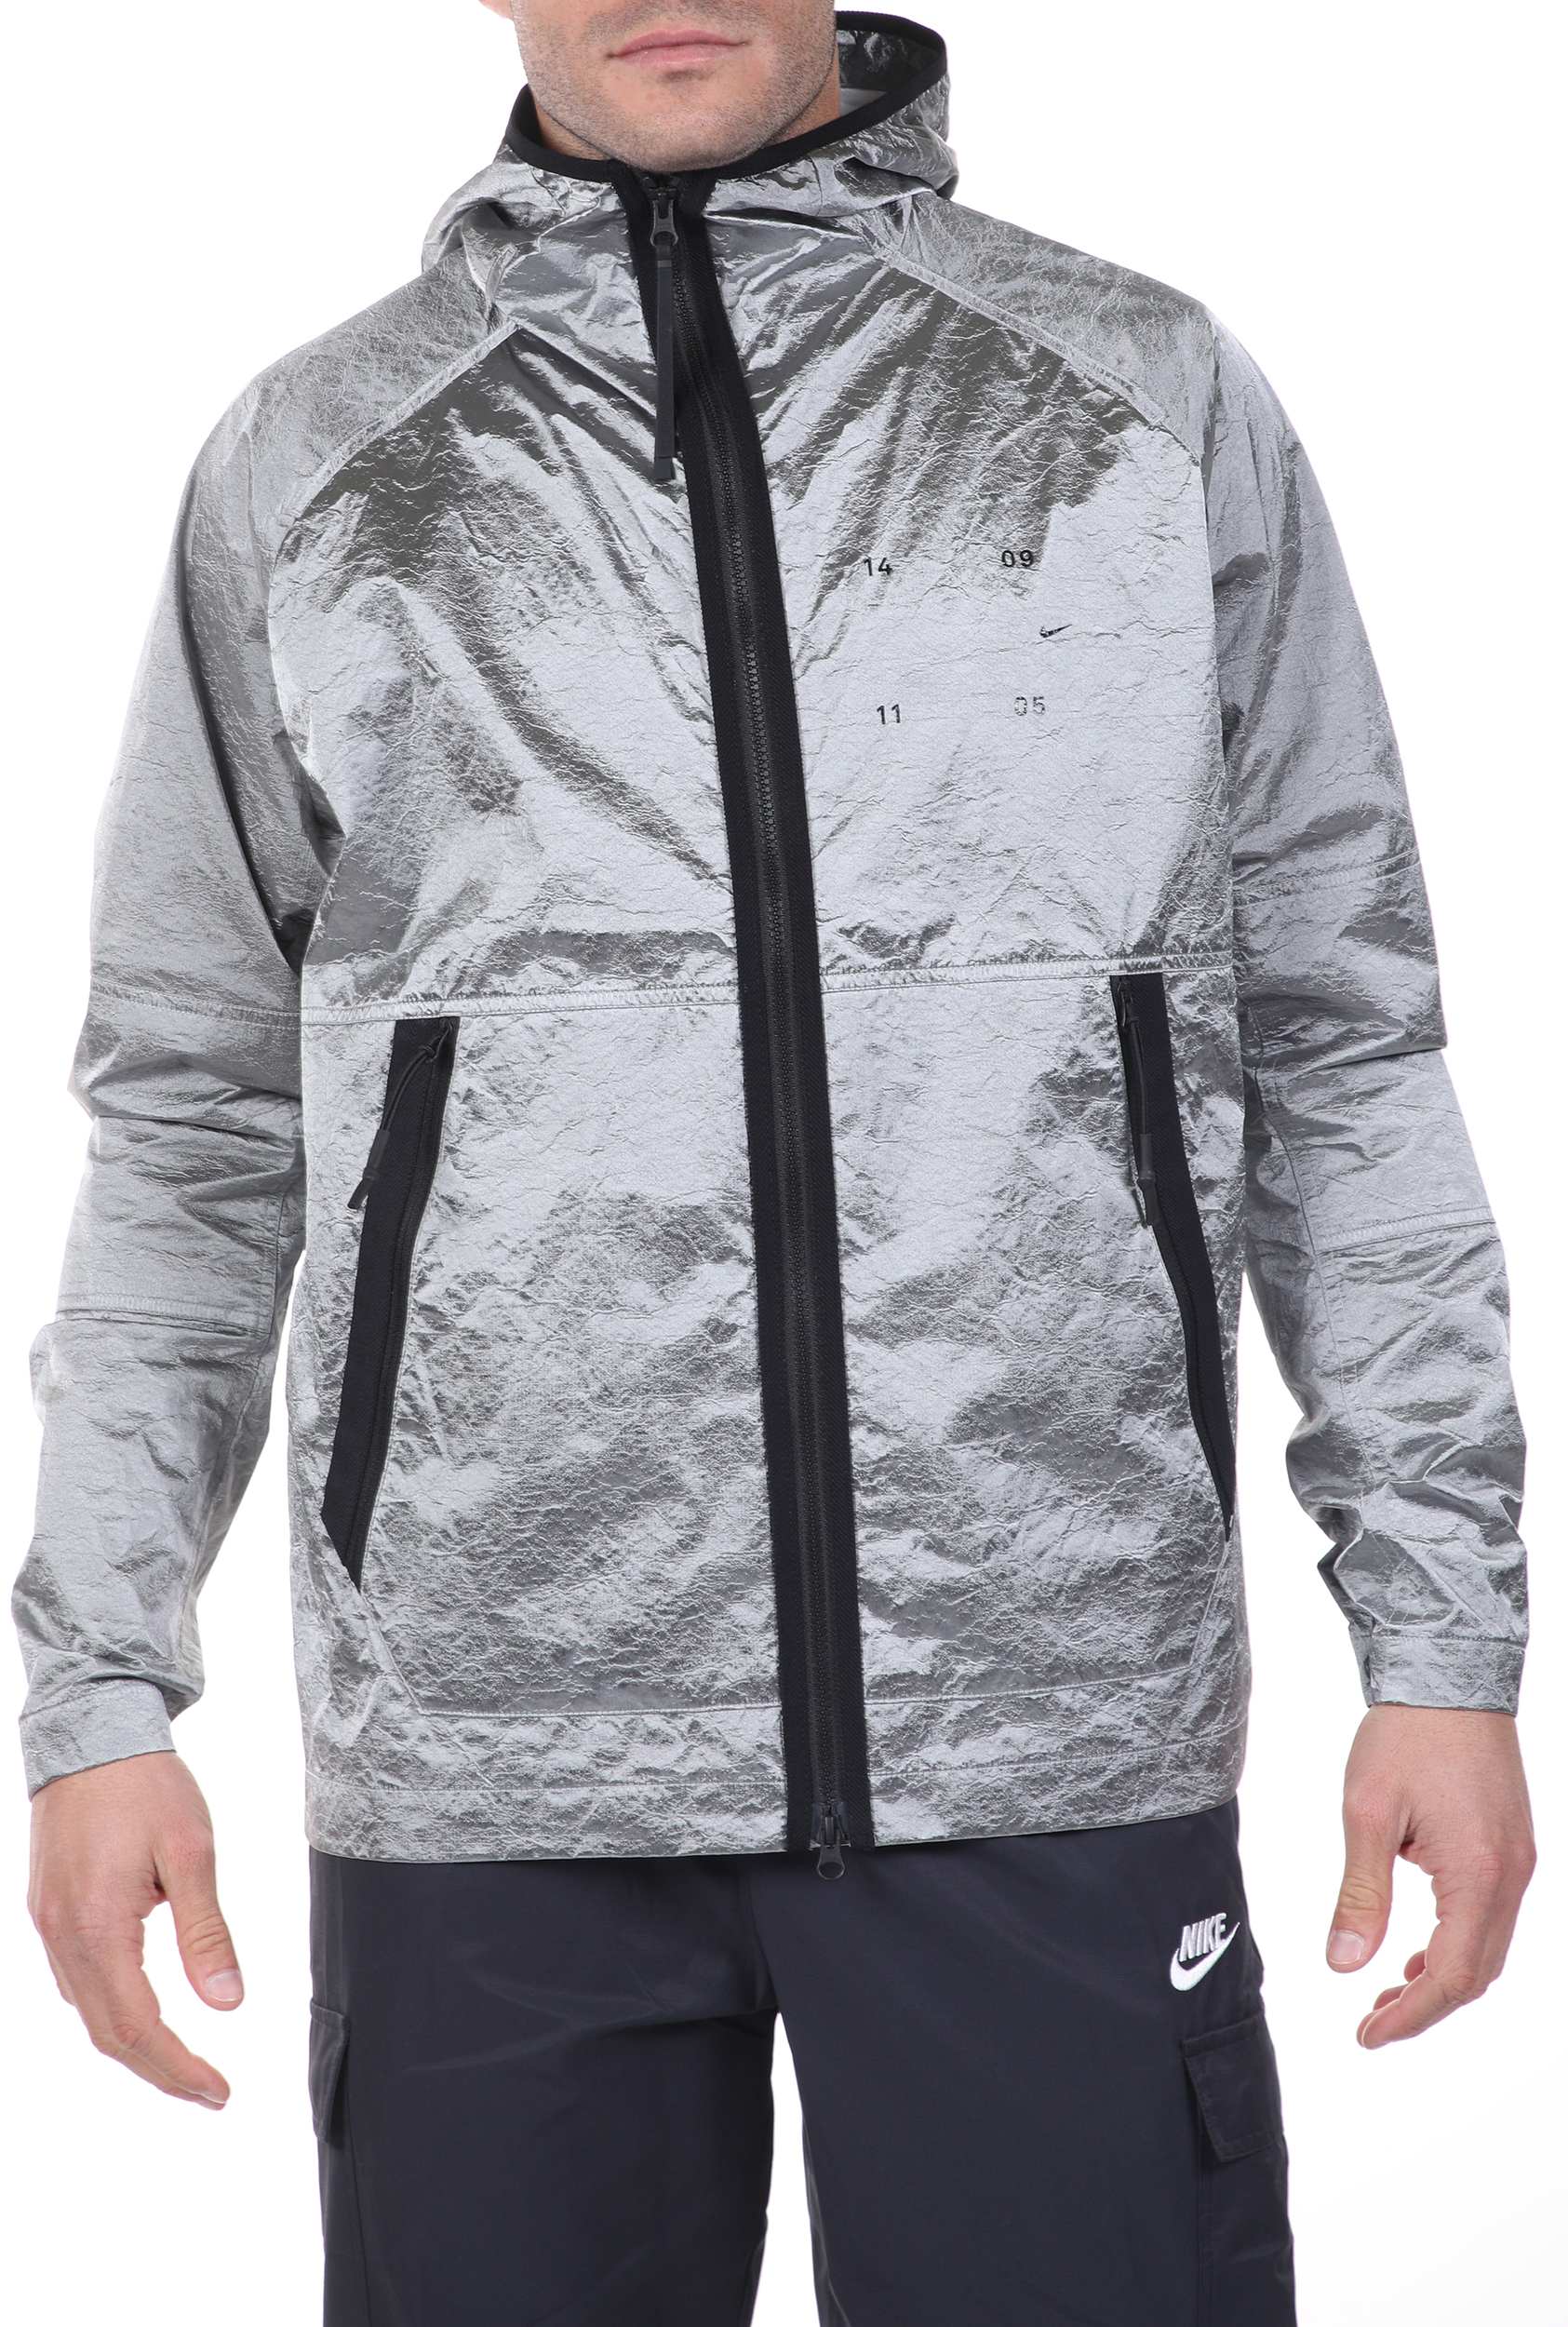 Ανδρικά/Ρούχα/Πανωφόρια/Μπουφάν NIKE - Ανδρικό αντιανεμικό jacket NIKE NSW TCH PCK JKT HD WVN ασημί